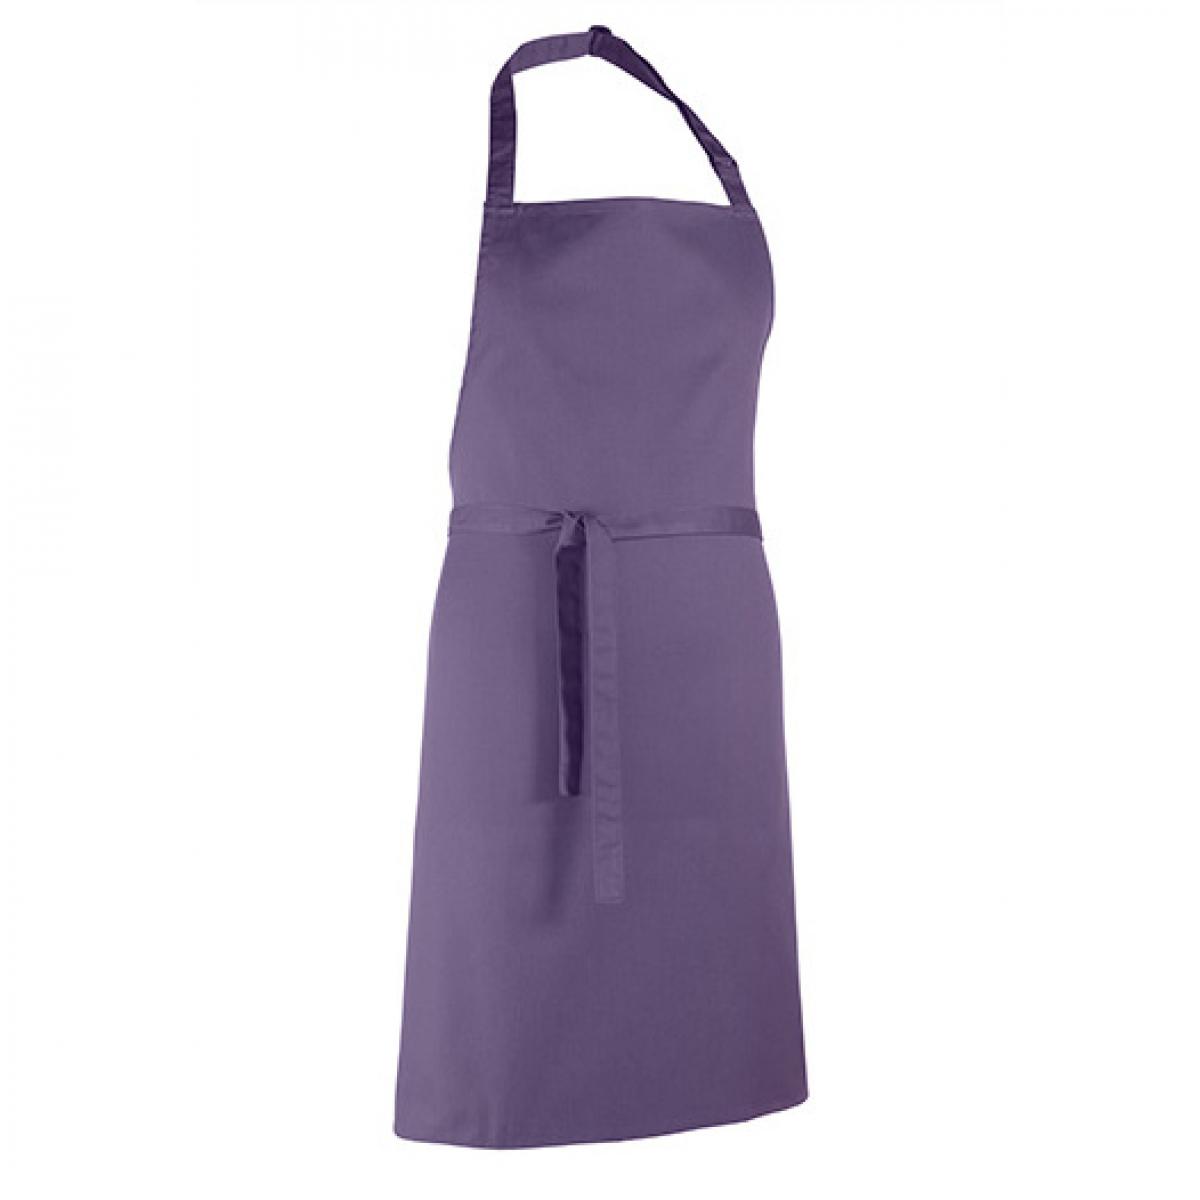 Hersteller: Premier Workwear Herstellernummer: PR150 Artikelbezeichnung: Latzschürze ´Colours´ - Waschbar bei 60 °C Farbe: Purple (ca. Pantone 269)